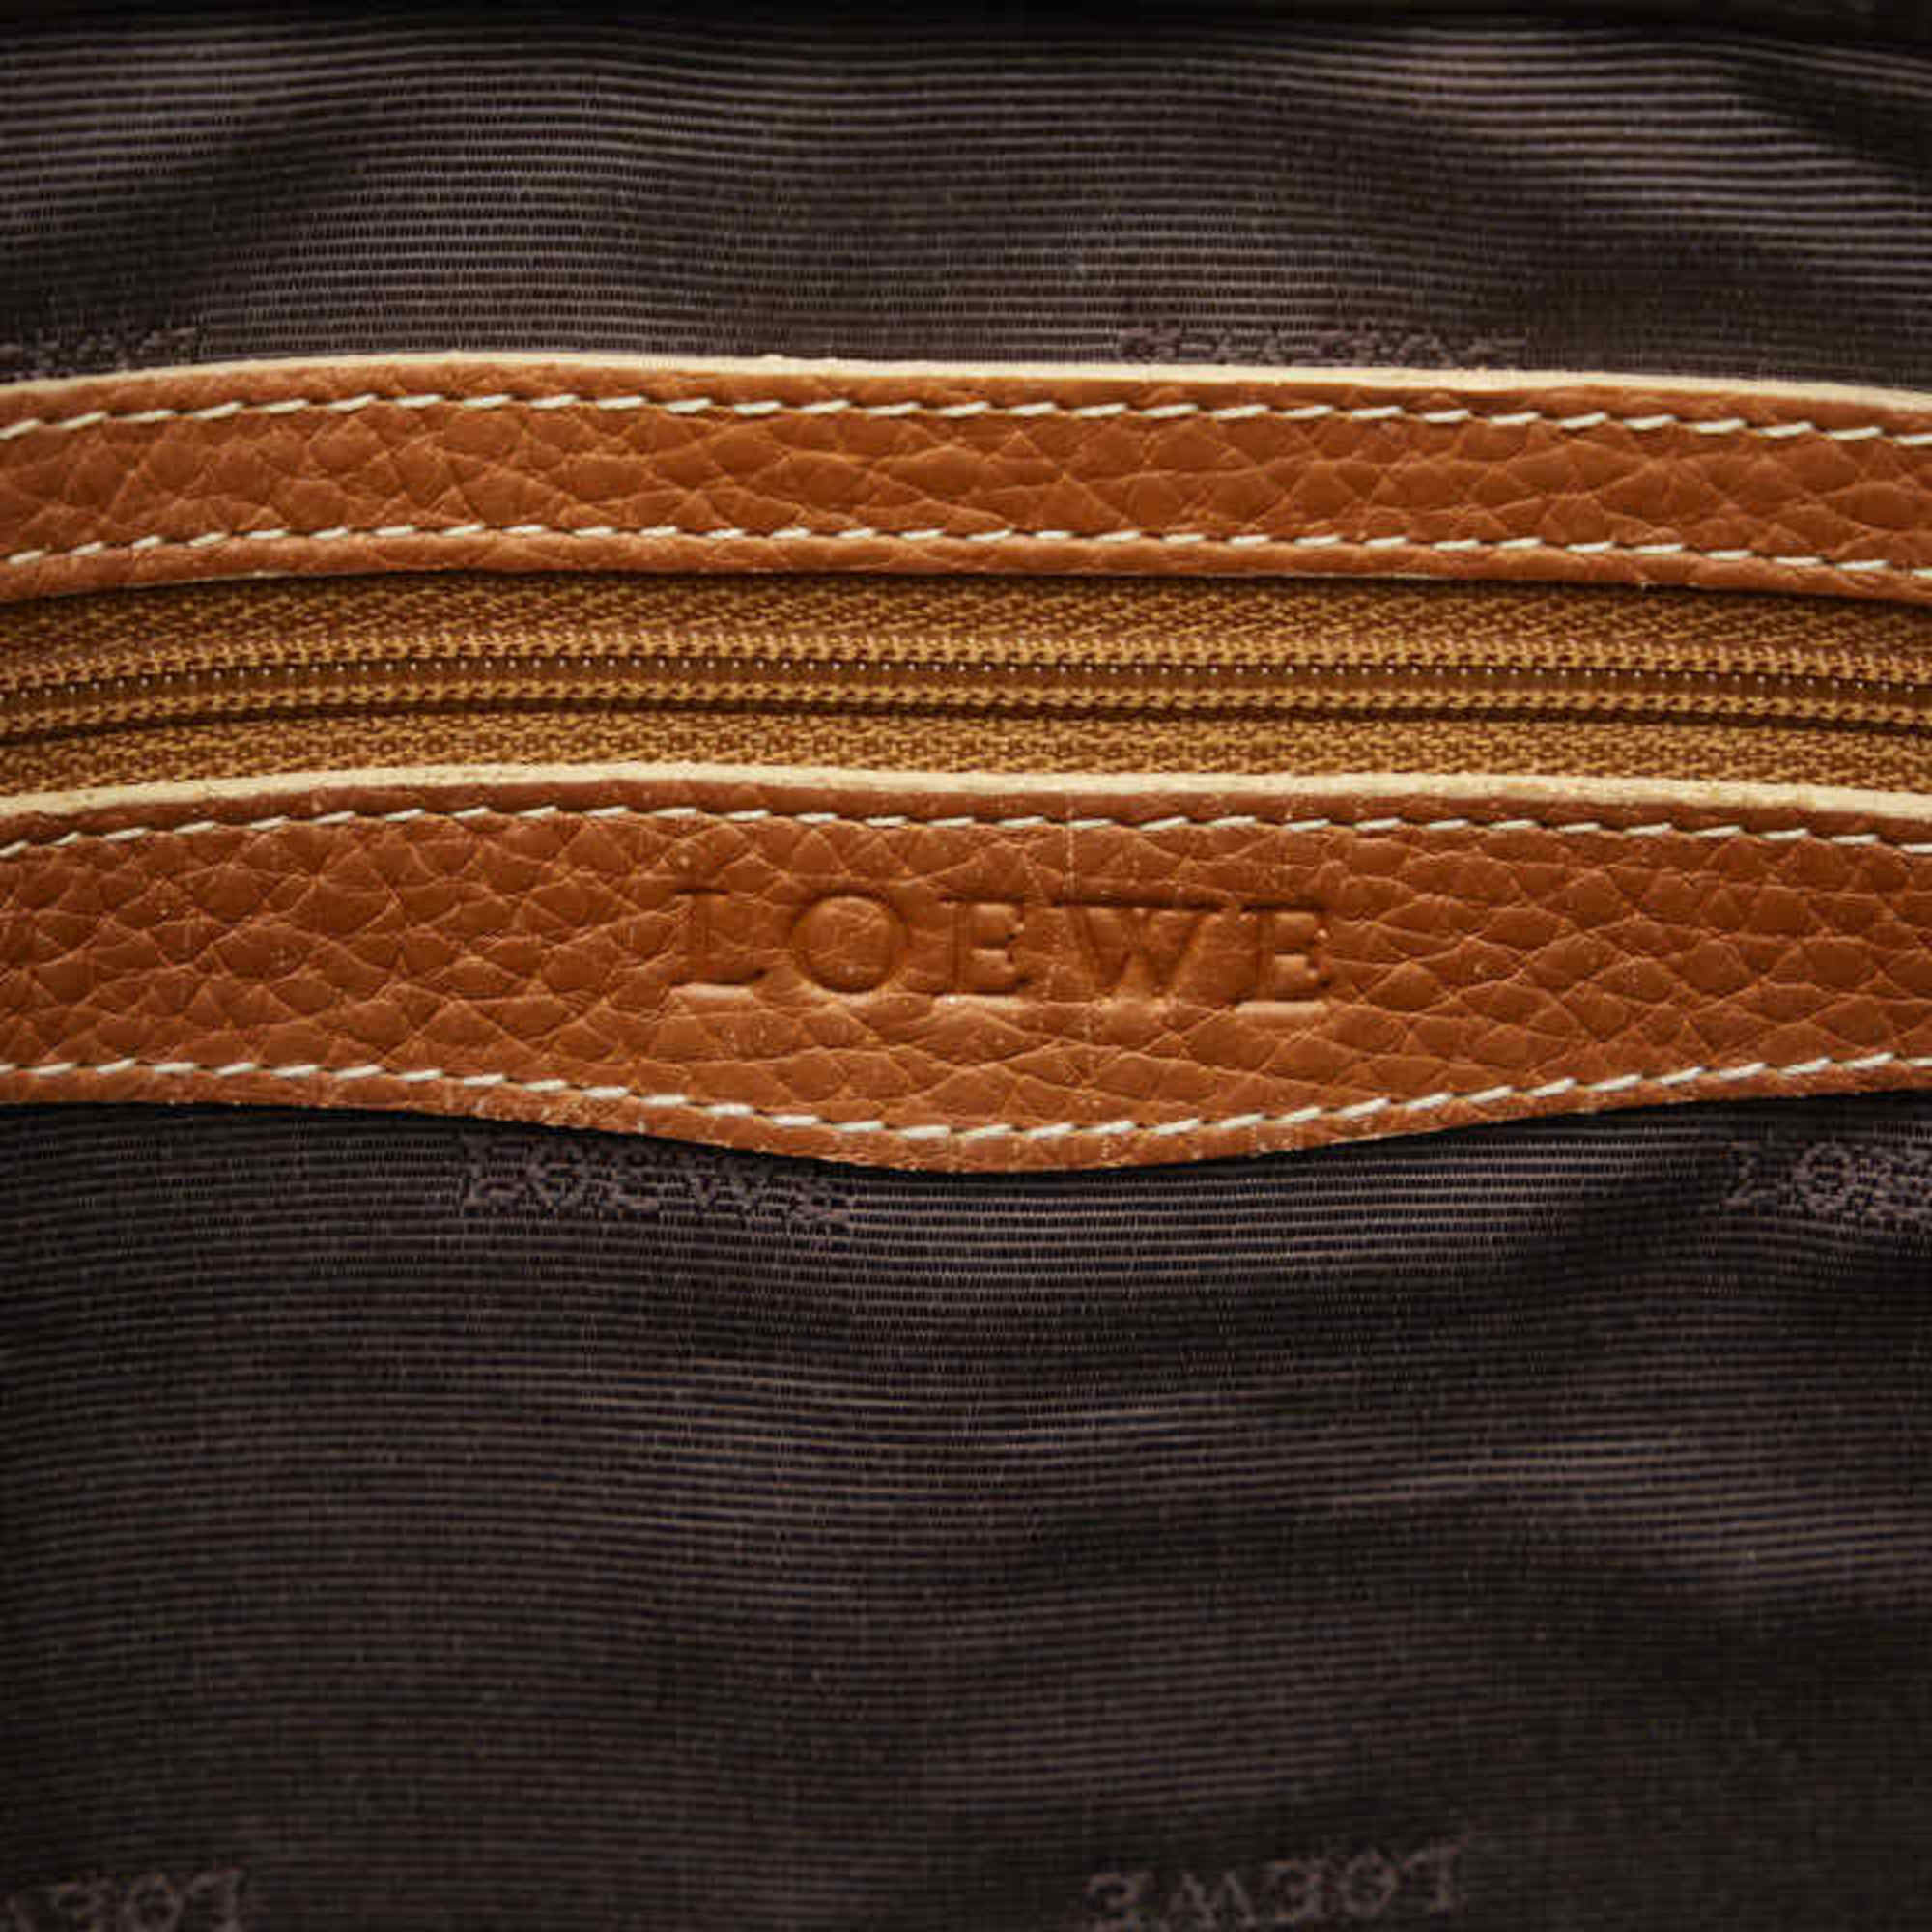 LOEWE Handbag Tote Bag Brown Leather Women's